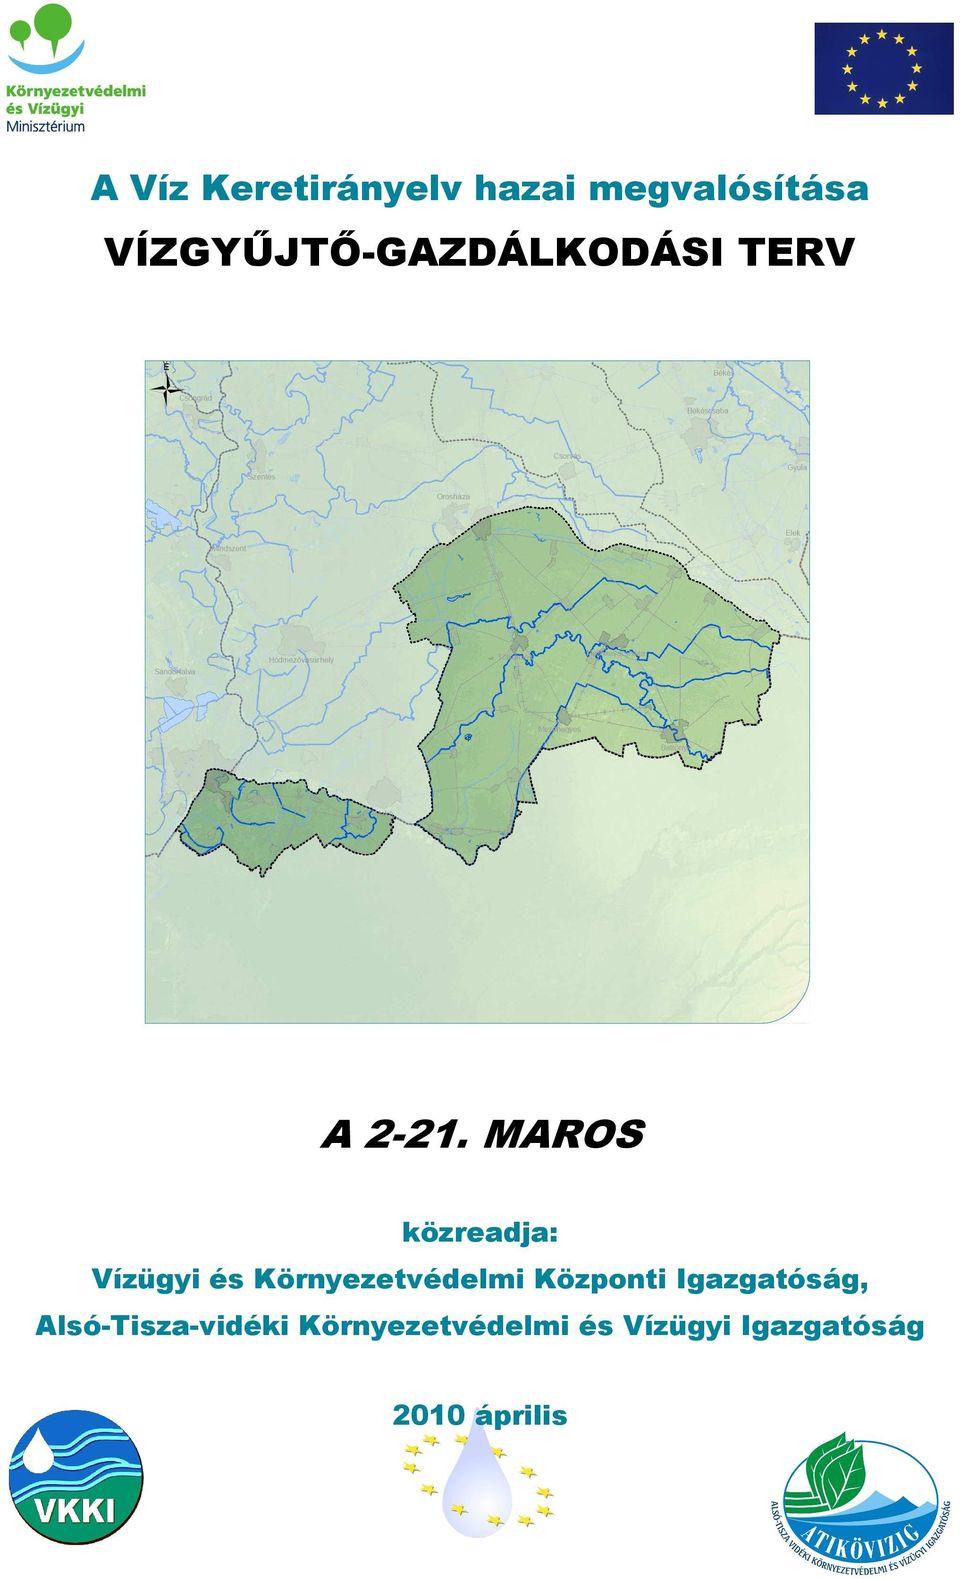 MAROS közreadja: Vízügyi és Környezetvédelmi Központi